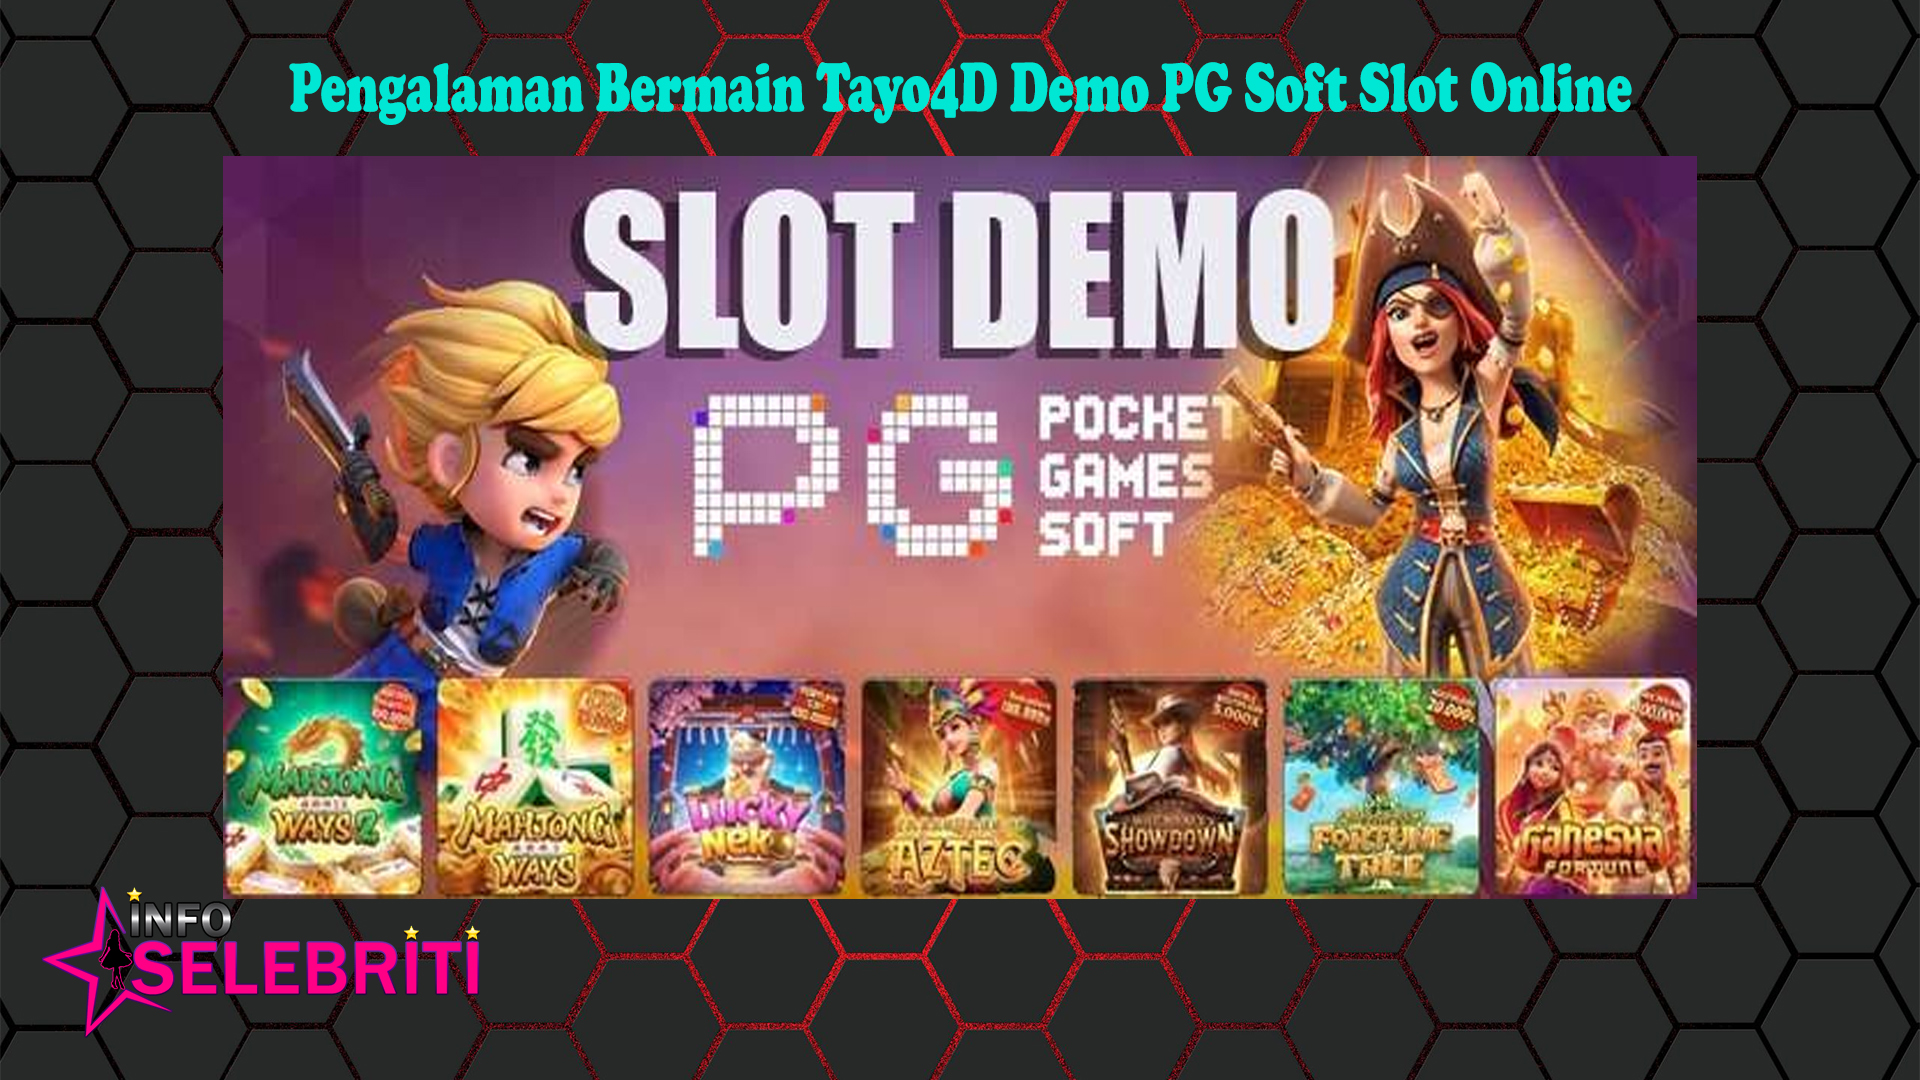 Pengalaman Bermain Tayo4D Demo PG Soft Slot Online